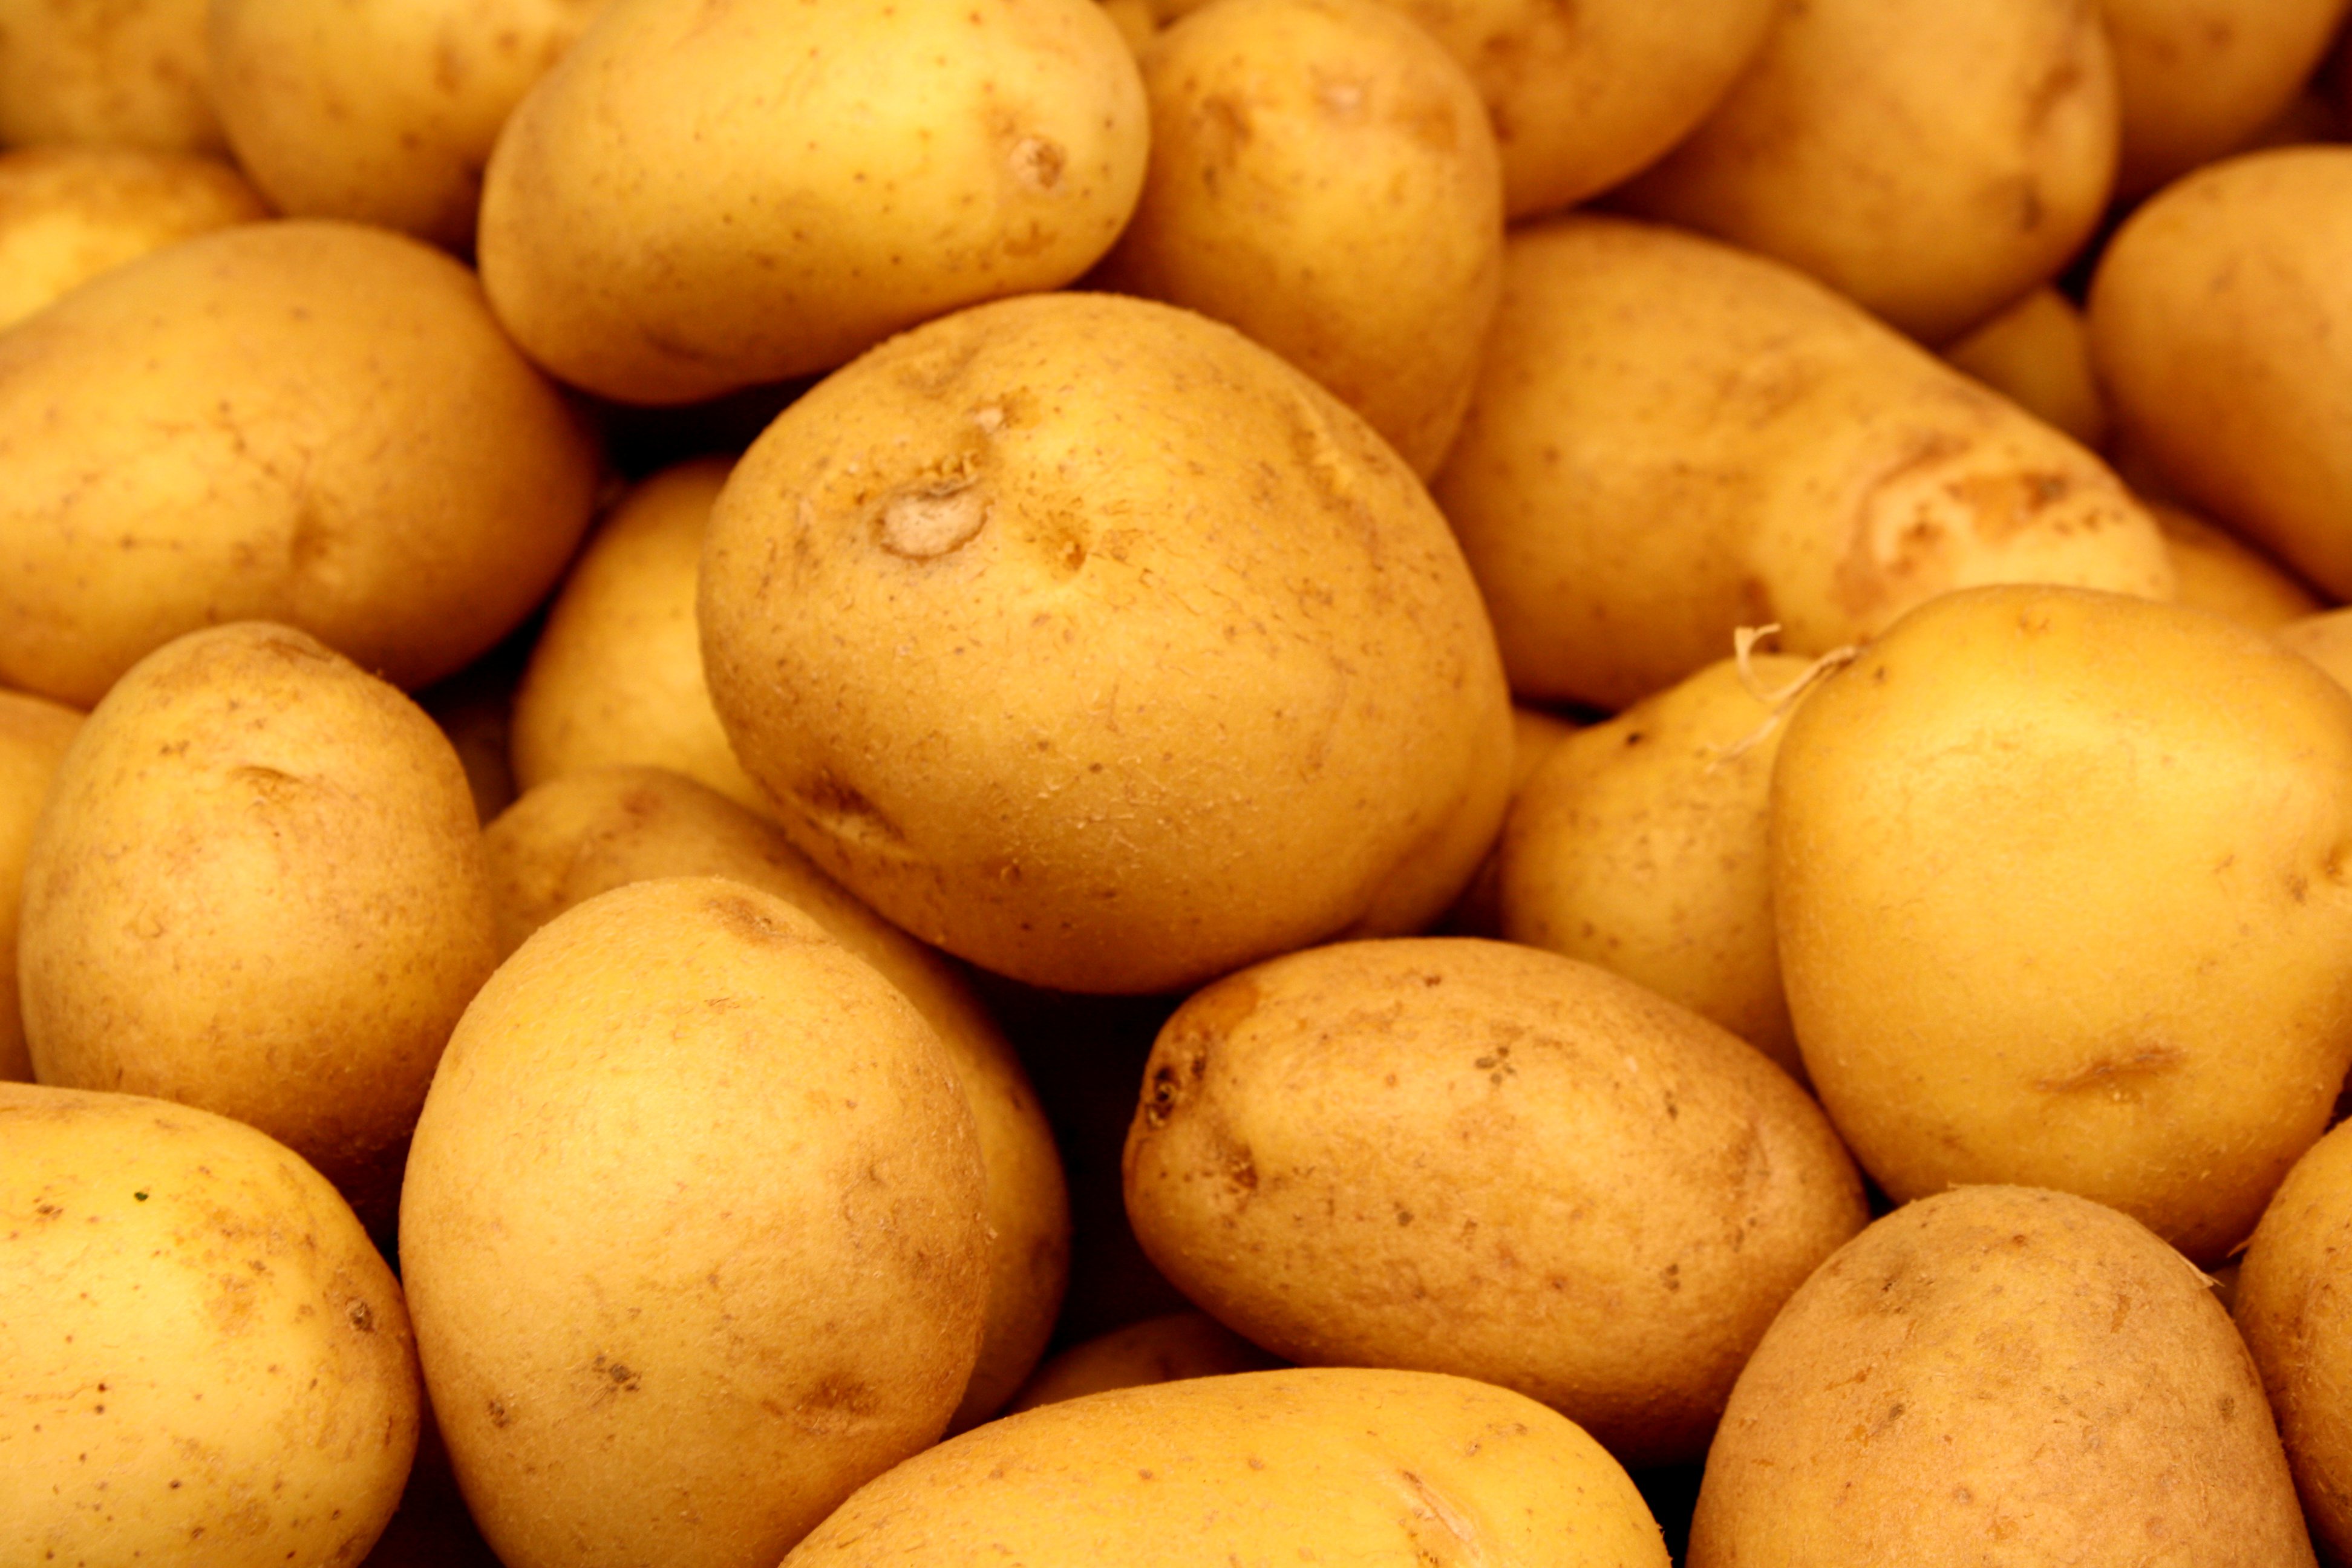 Potatoes Picture | Free Photograph | Photos Public Domain